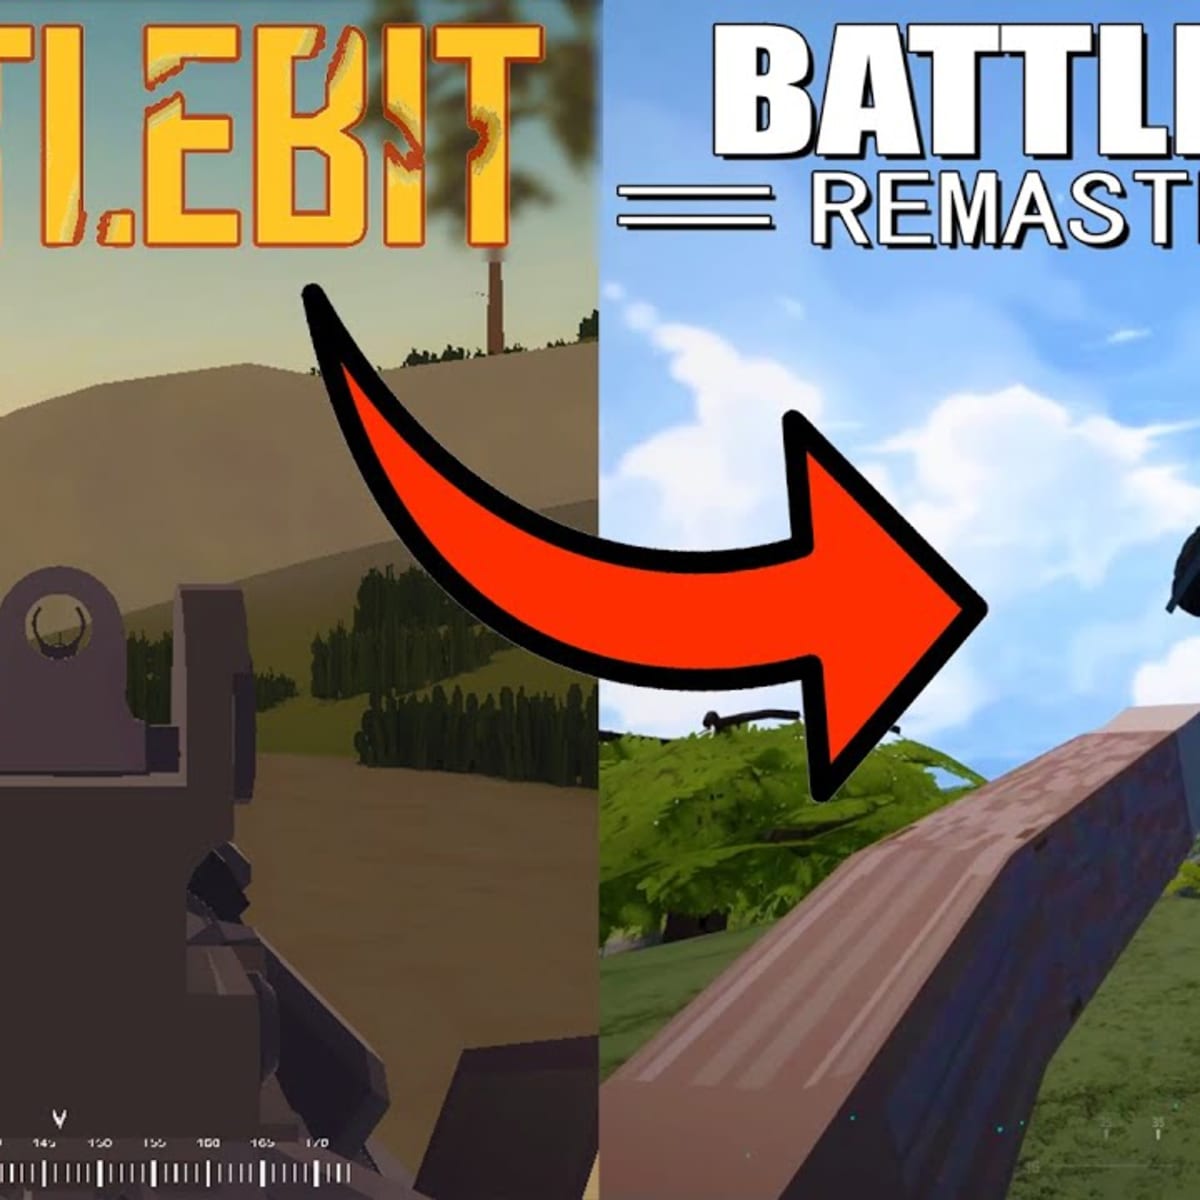 BattleBit Remastered, uma mistura de Battlefield com Roblox, é o